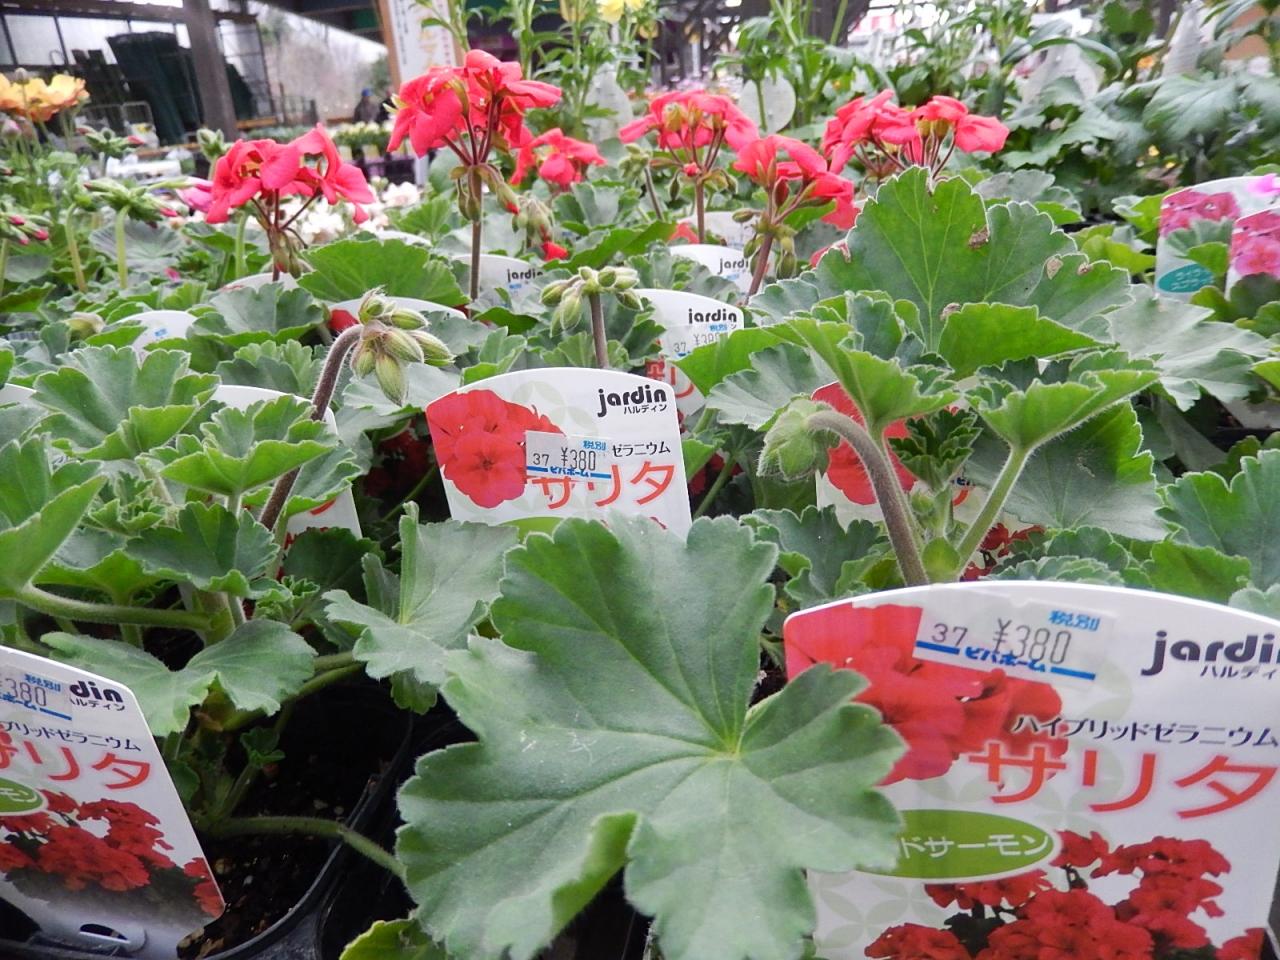 ガーデンセンターで見られた春の花 28 埼玉県の旅行記 ブログ By Tsunetaさん フォートラベル